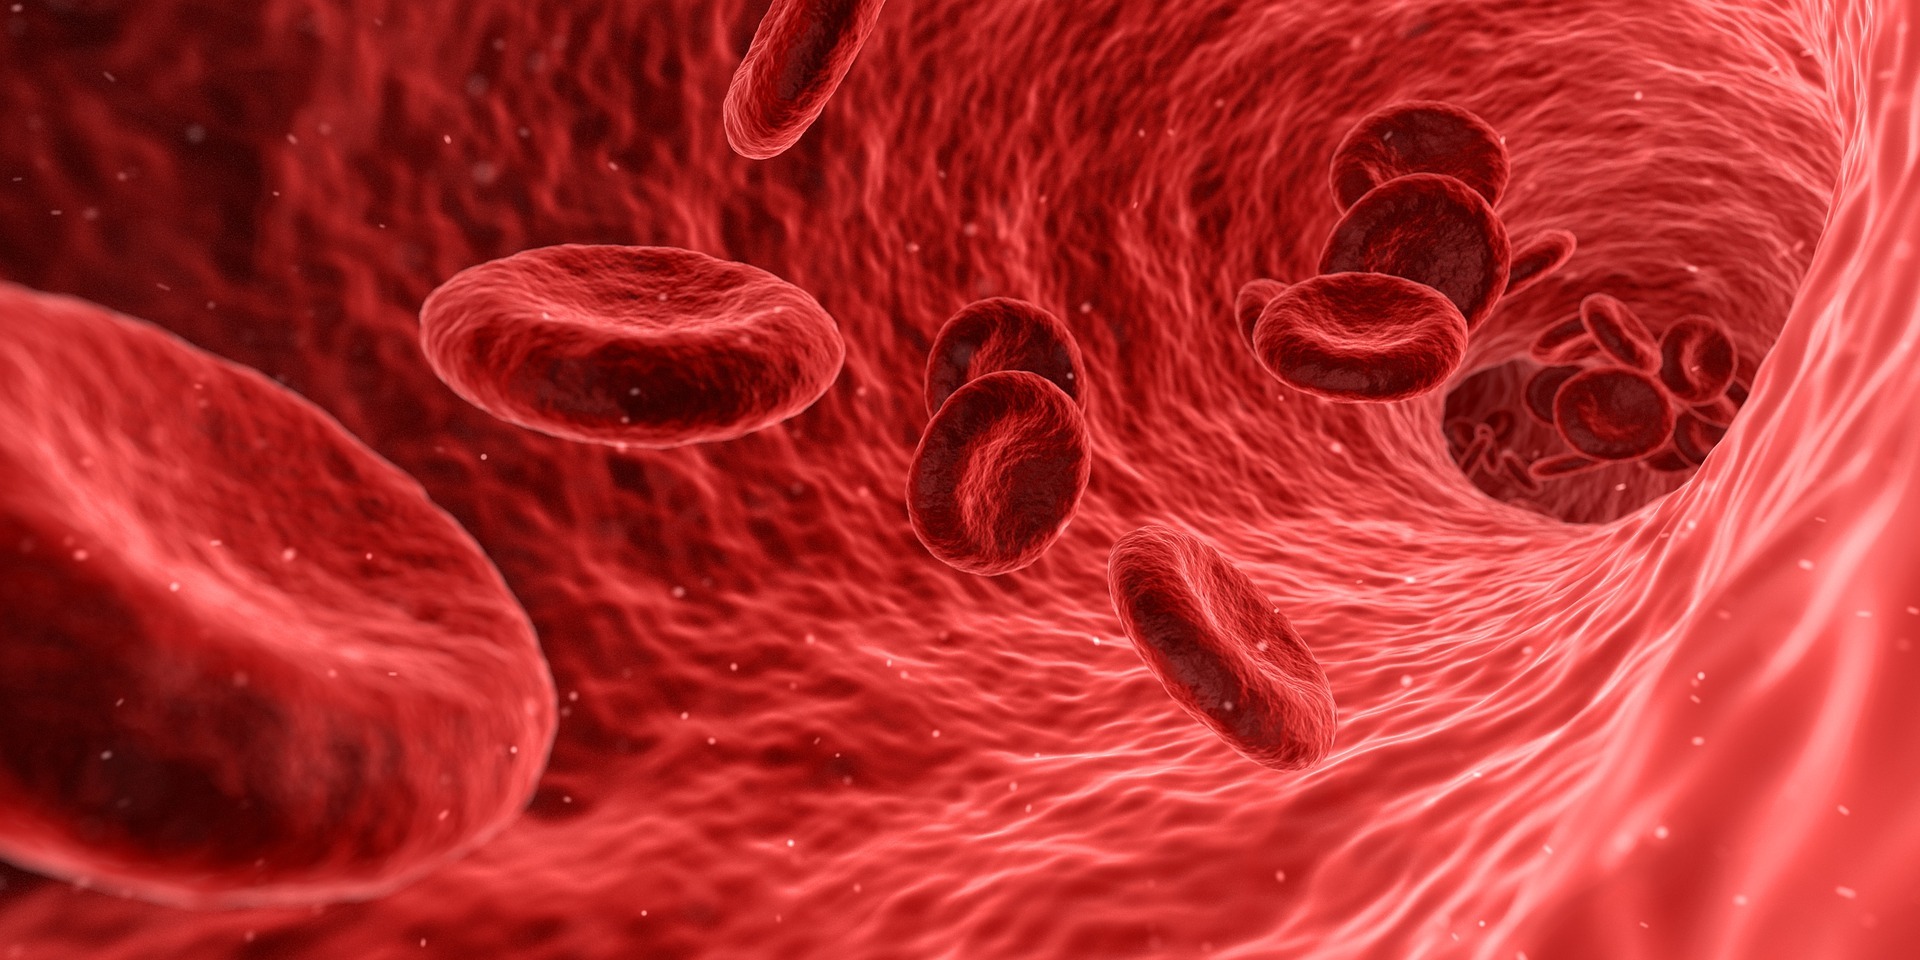 Zu hoher Cholesterin Wert im Blut auf koerperfett-analyse.de